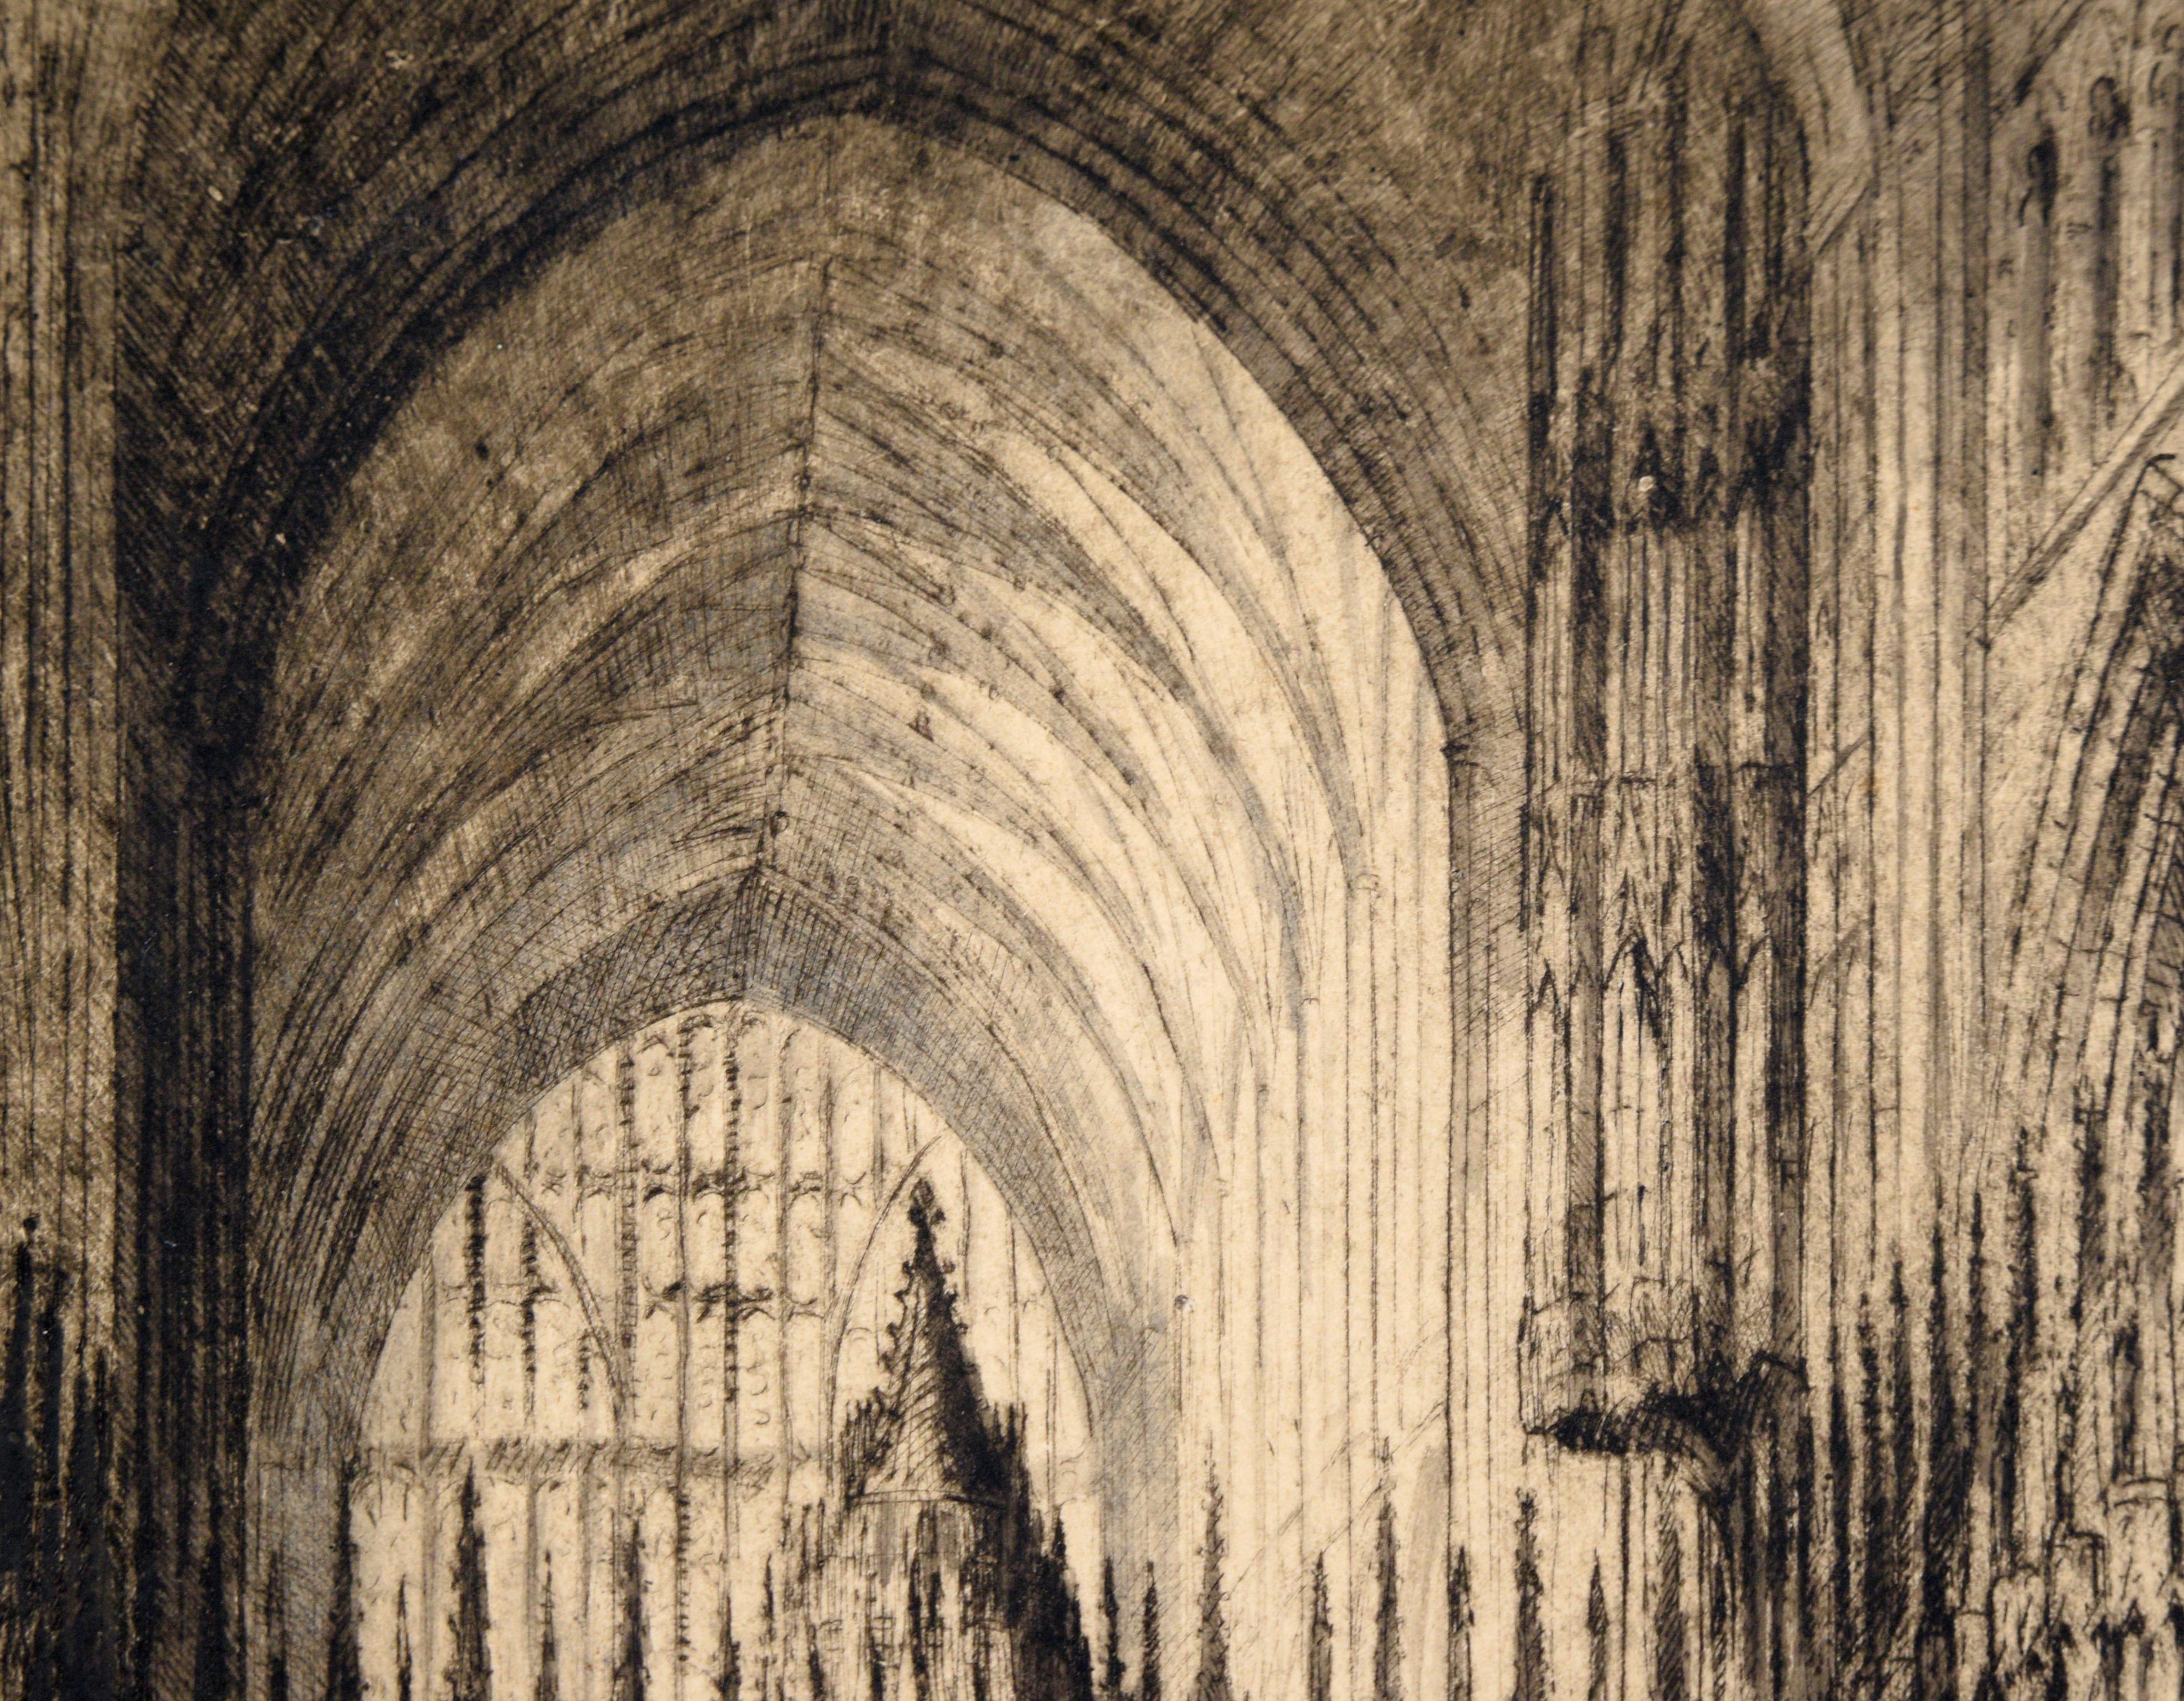 Chester-Kathedrale – Kaltnadelradierung in Tinte auf Papier (Romantik), Print, von James Alphege Brewer